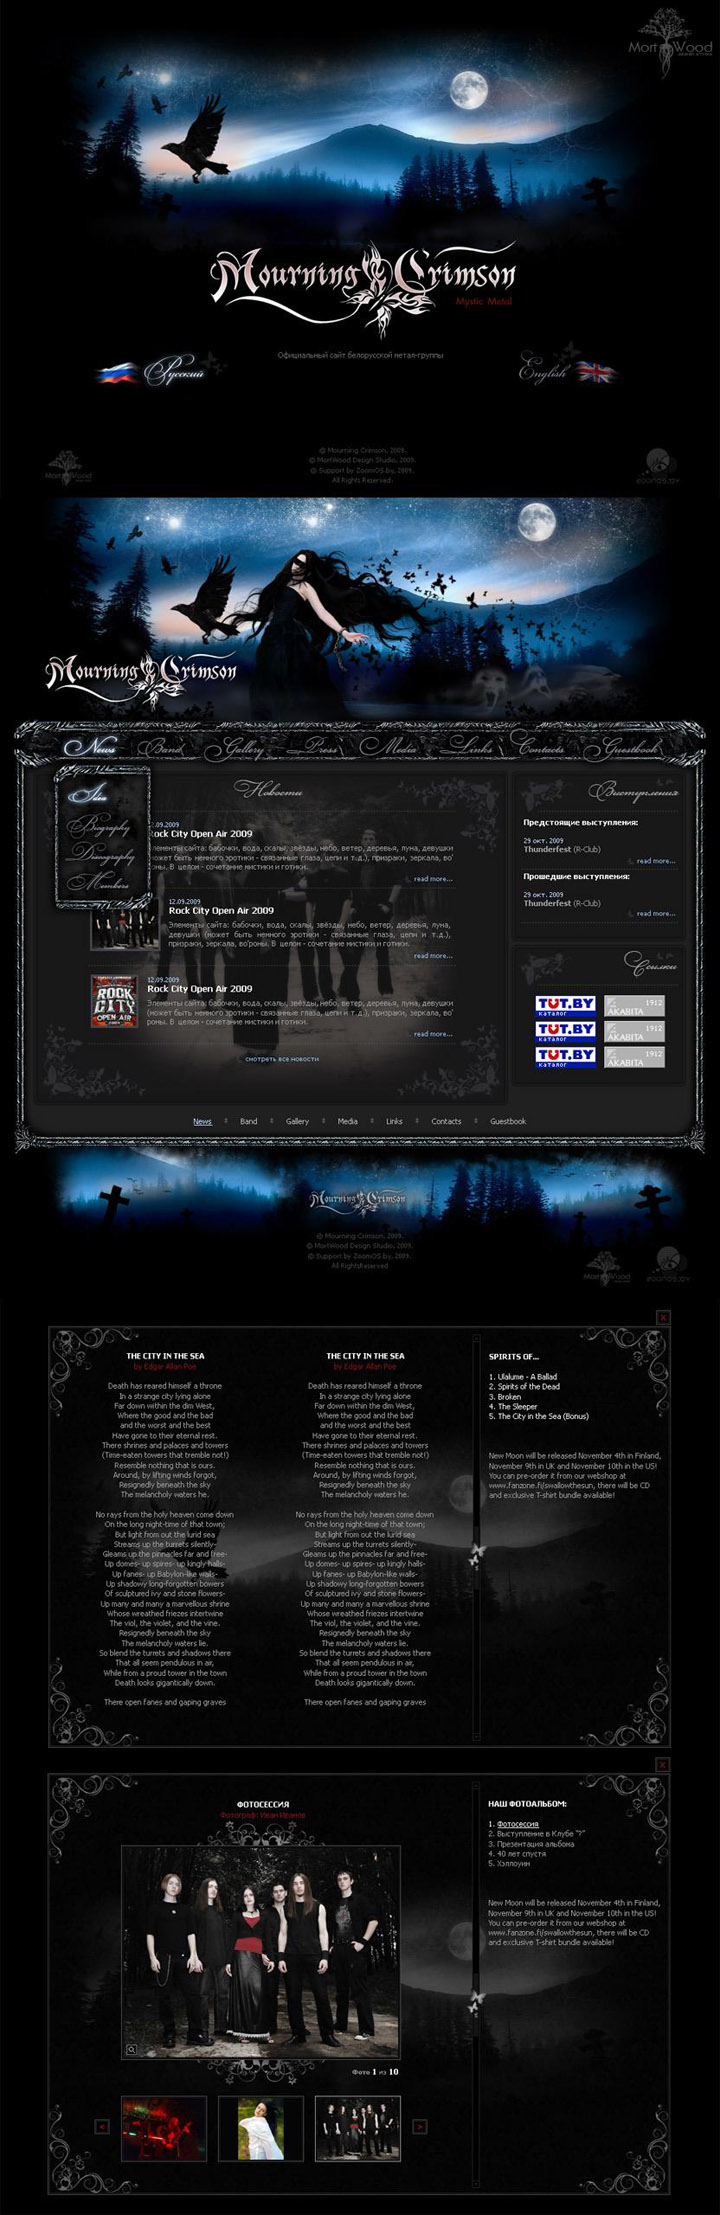 Mournin-Crimson.com - официальный сайт белорусской мистик-готик группы